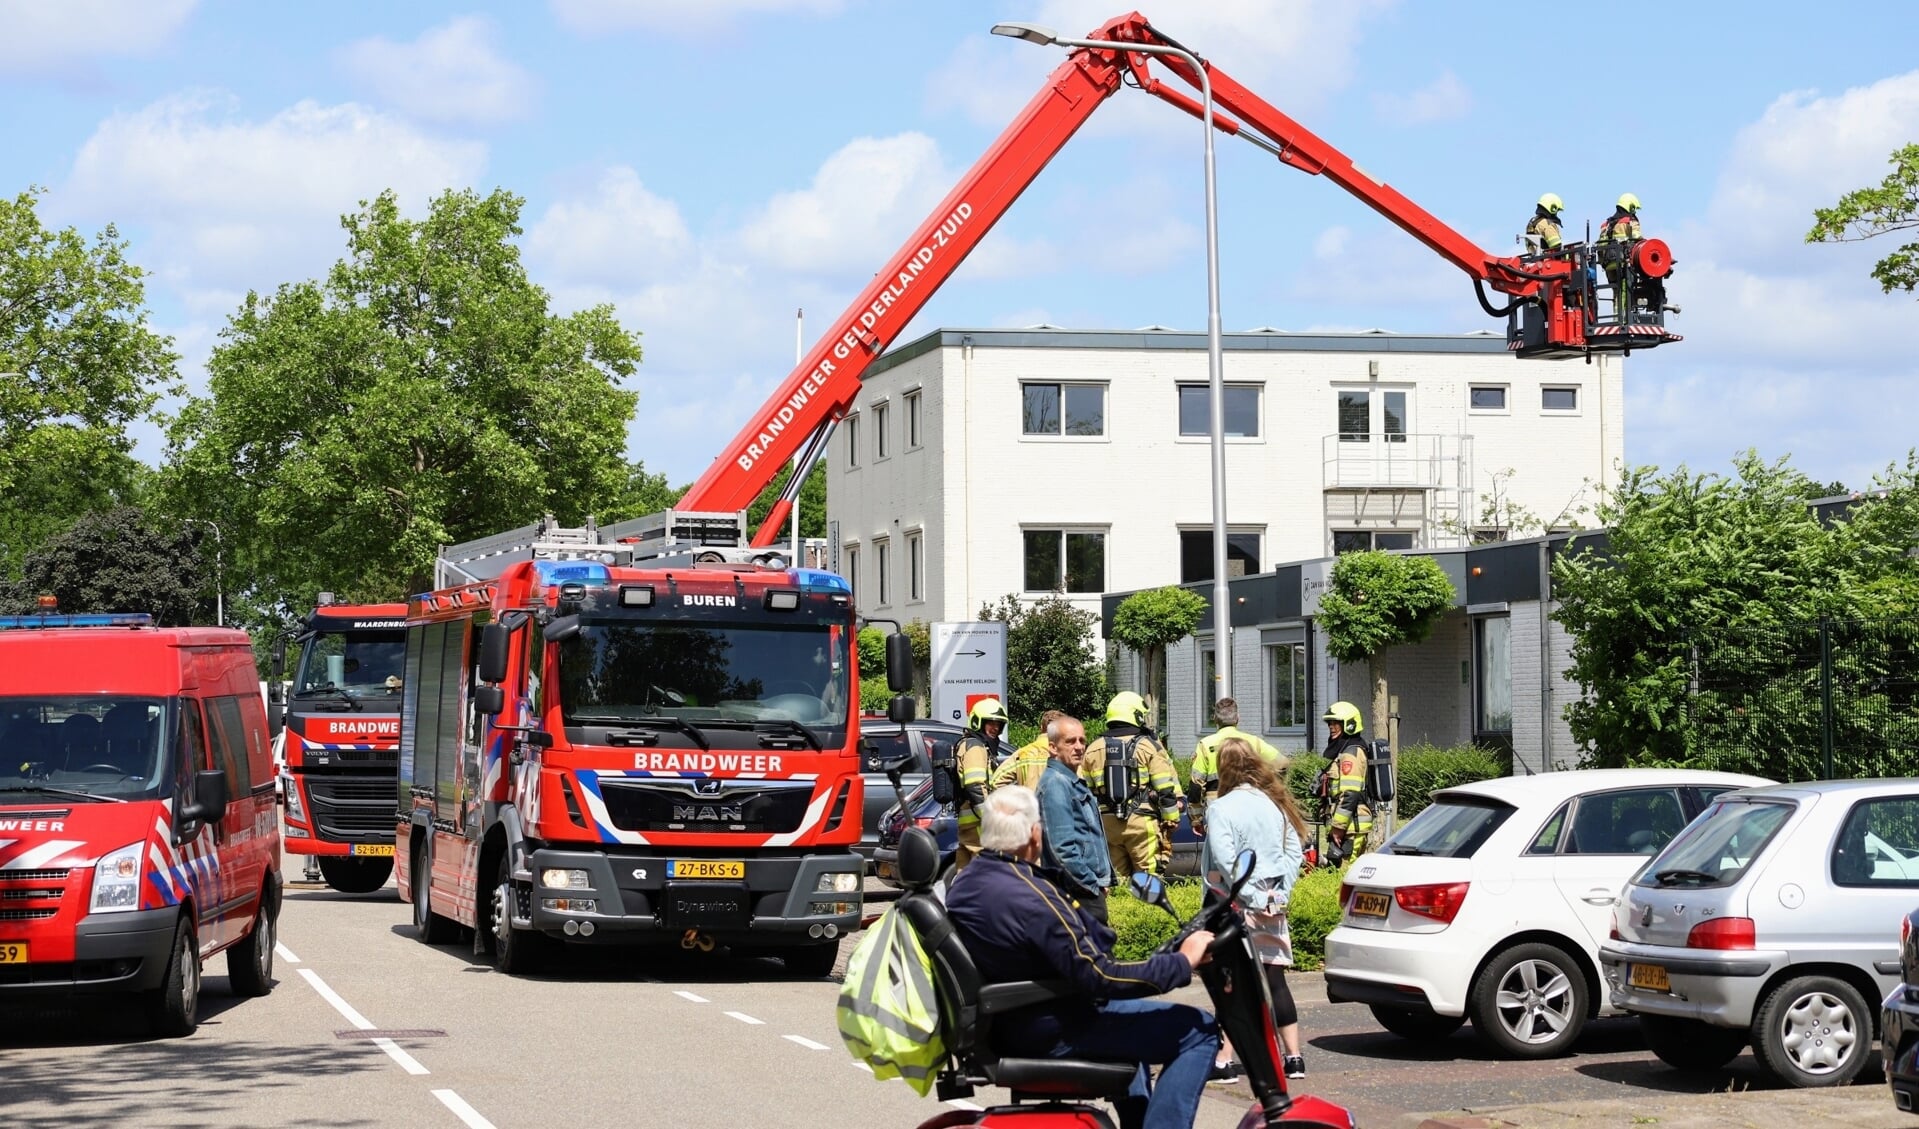 • Met een hoogwerker is de brandweer het dak op geweest om de situatie verder te beoordelen.